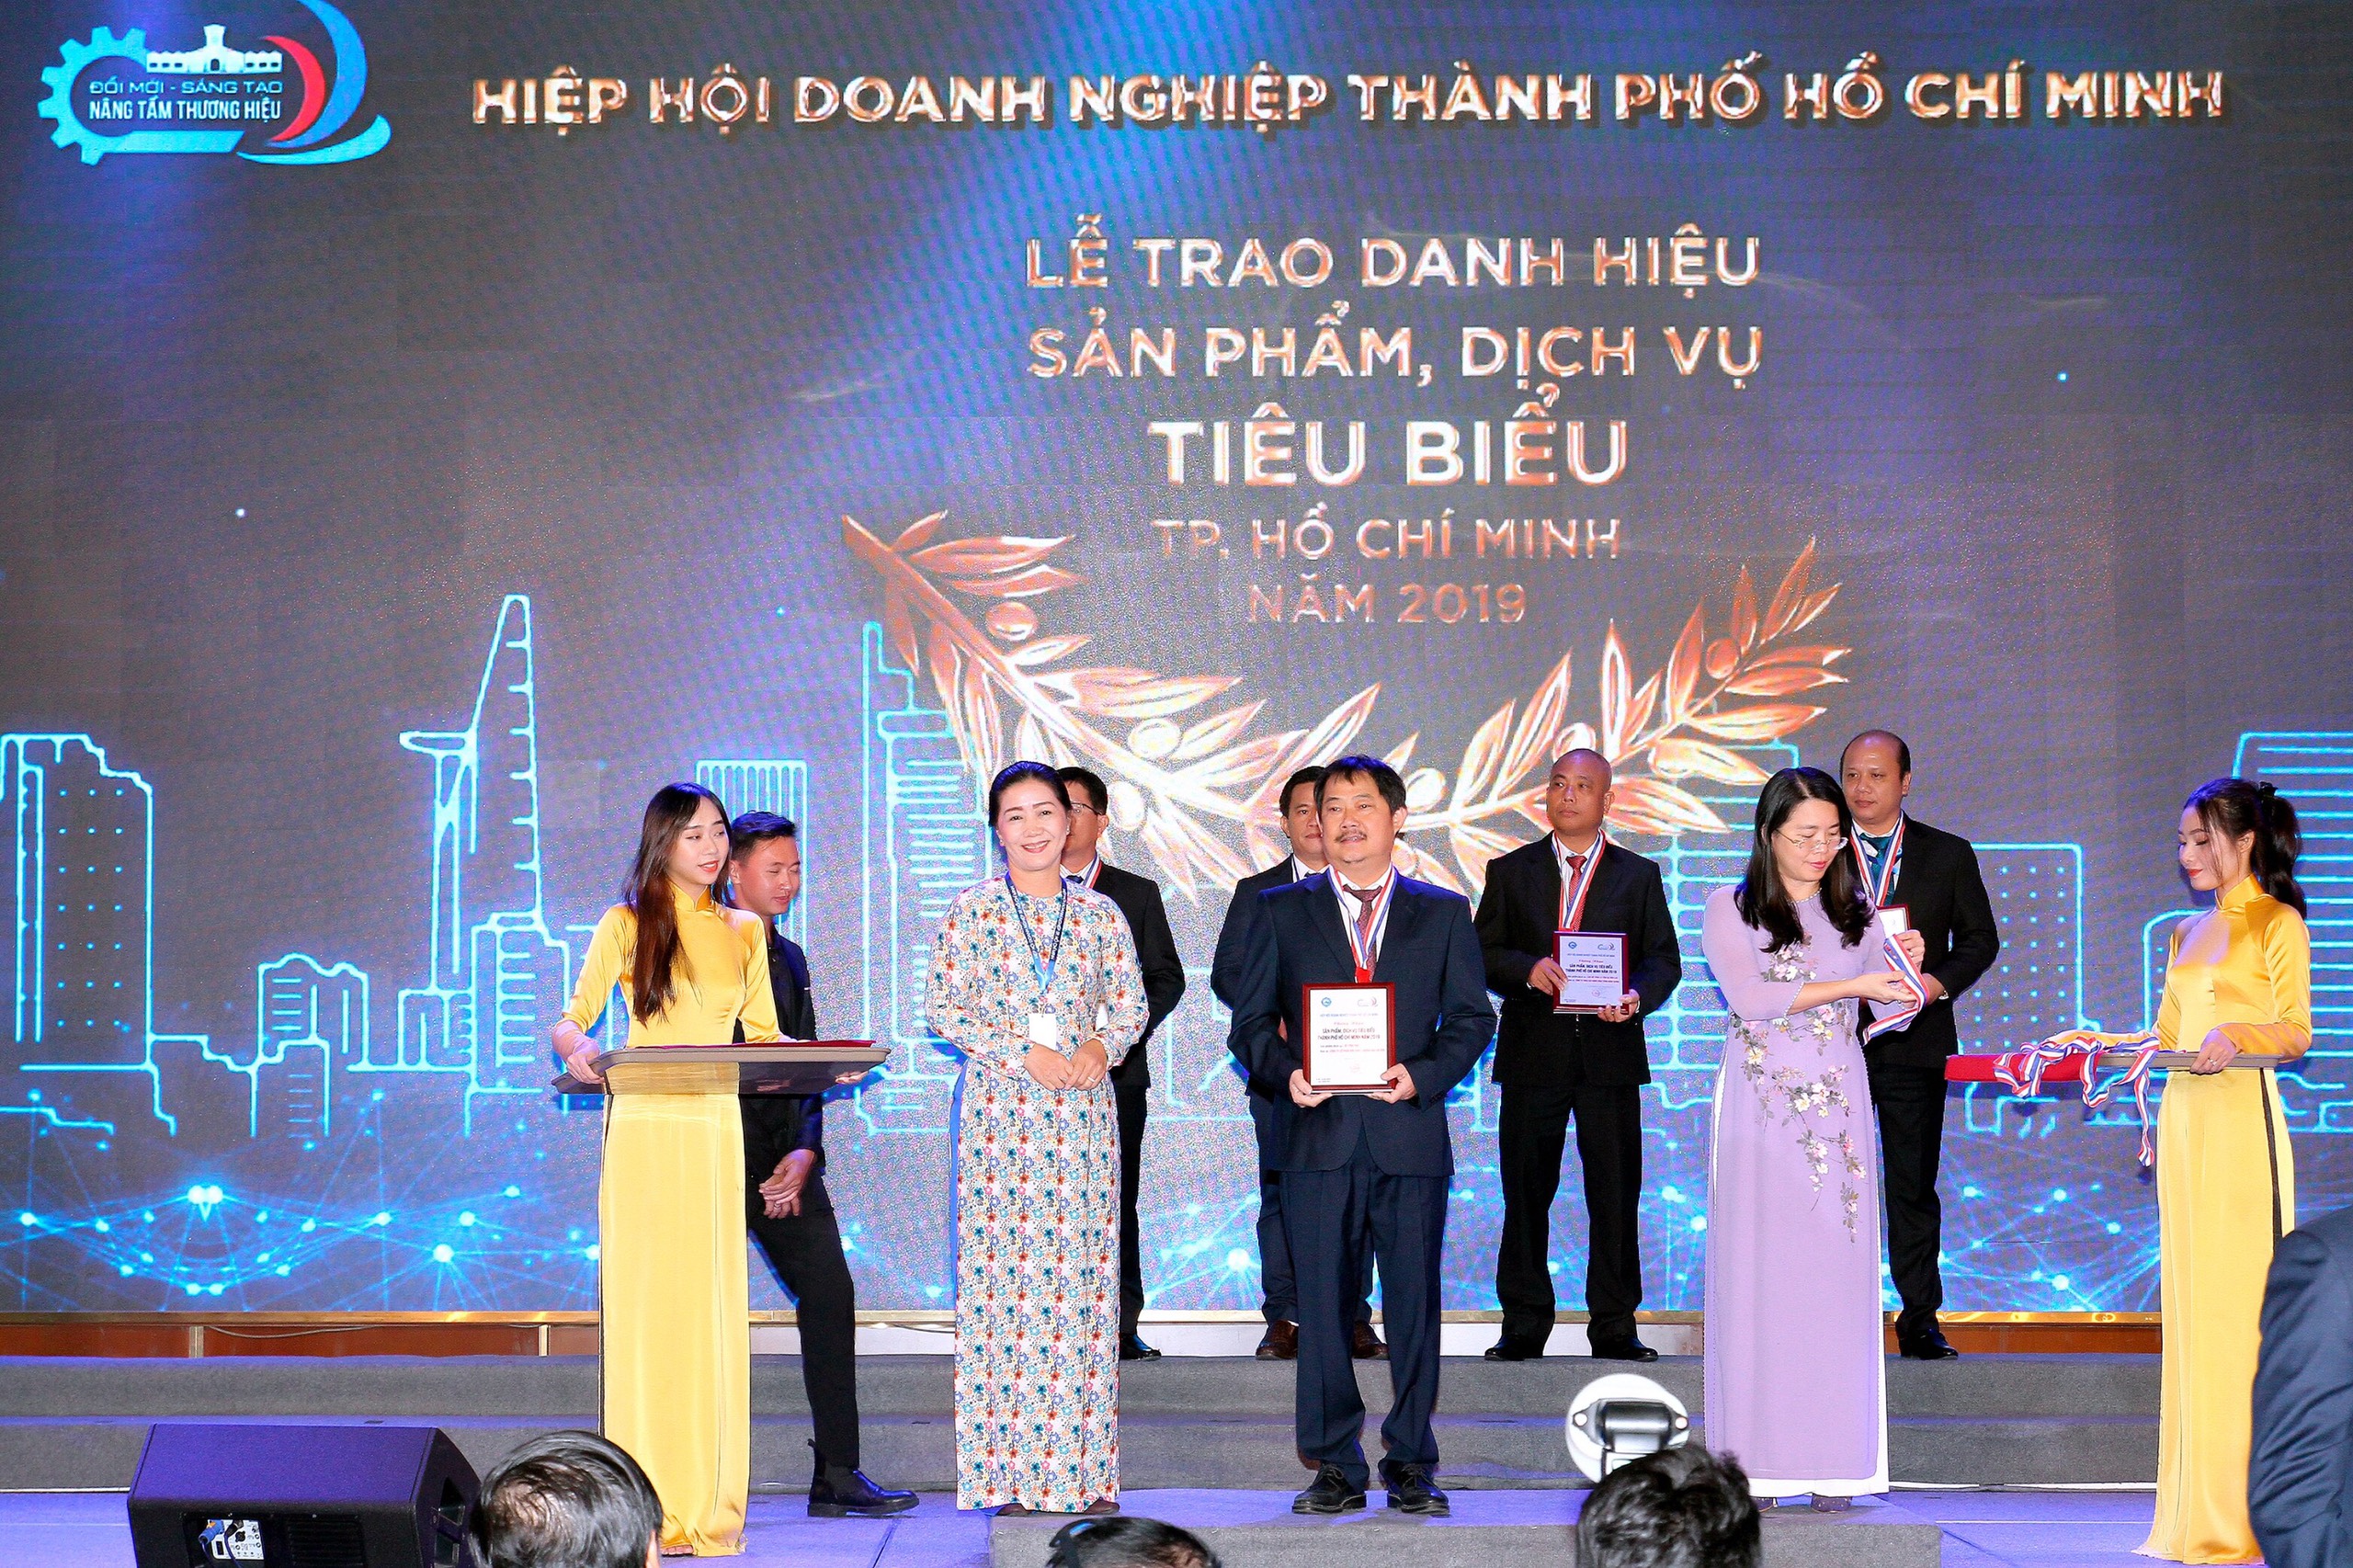 Ông Nguyễn Thành Vinh – Tổng Giám Đốc SMC nhận danh hiệu “Sản phẩm, dịch vụ tiêu biểu thành phố Hồ Chí Minh” năm 2019